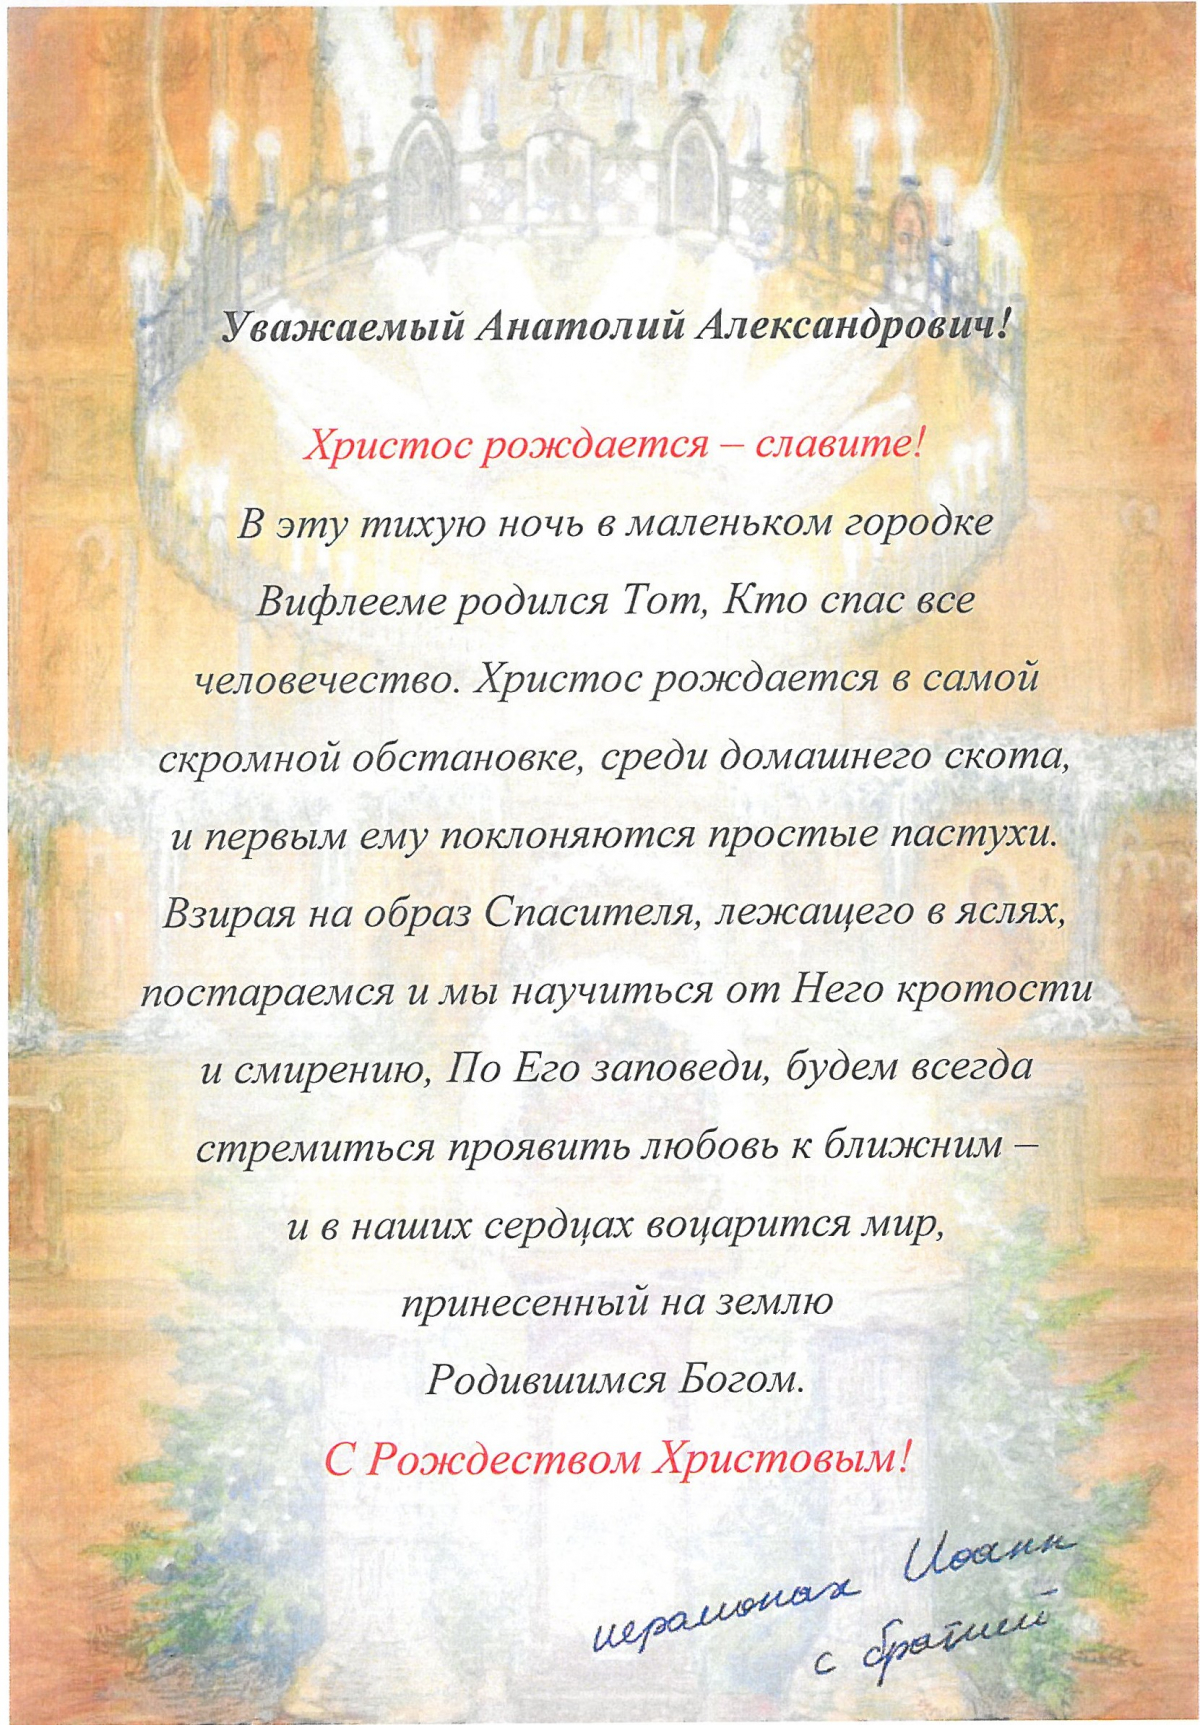 Сретенский монастырь.jpg